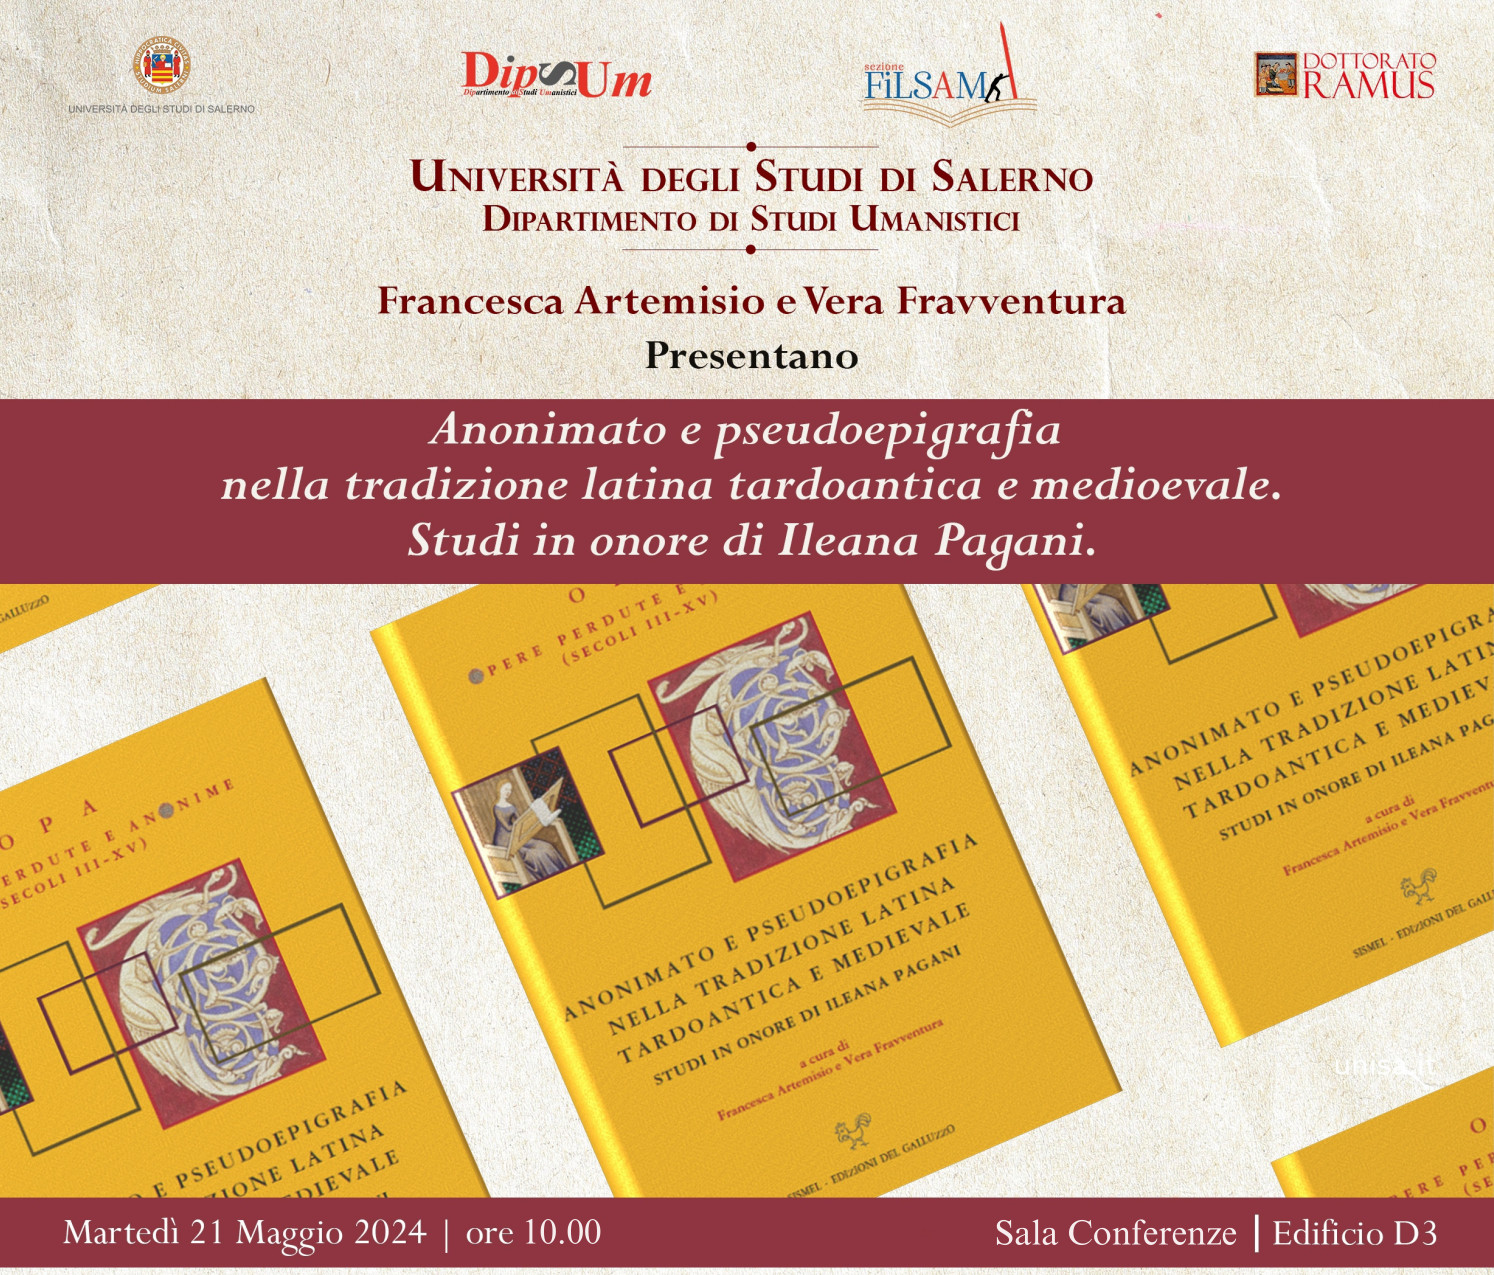 "Anonimato e pseudoepigrafia nella tradizione latina tardoantica e medievale. Studi in onore di Ileana Pagani"